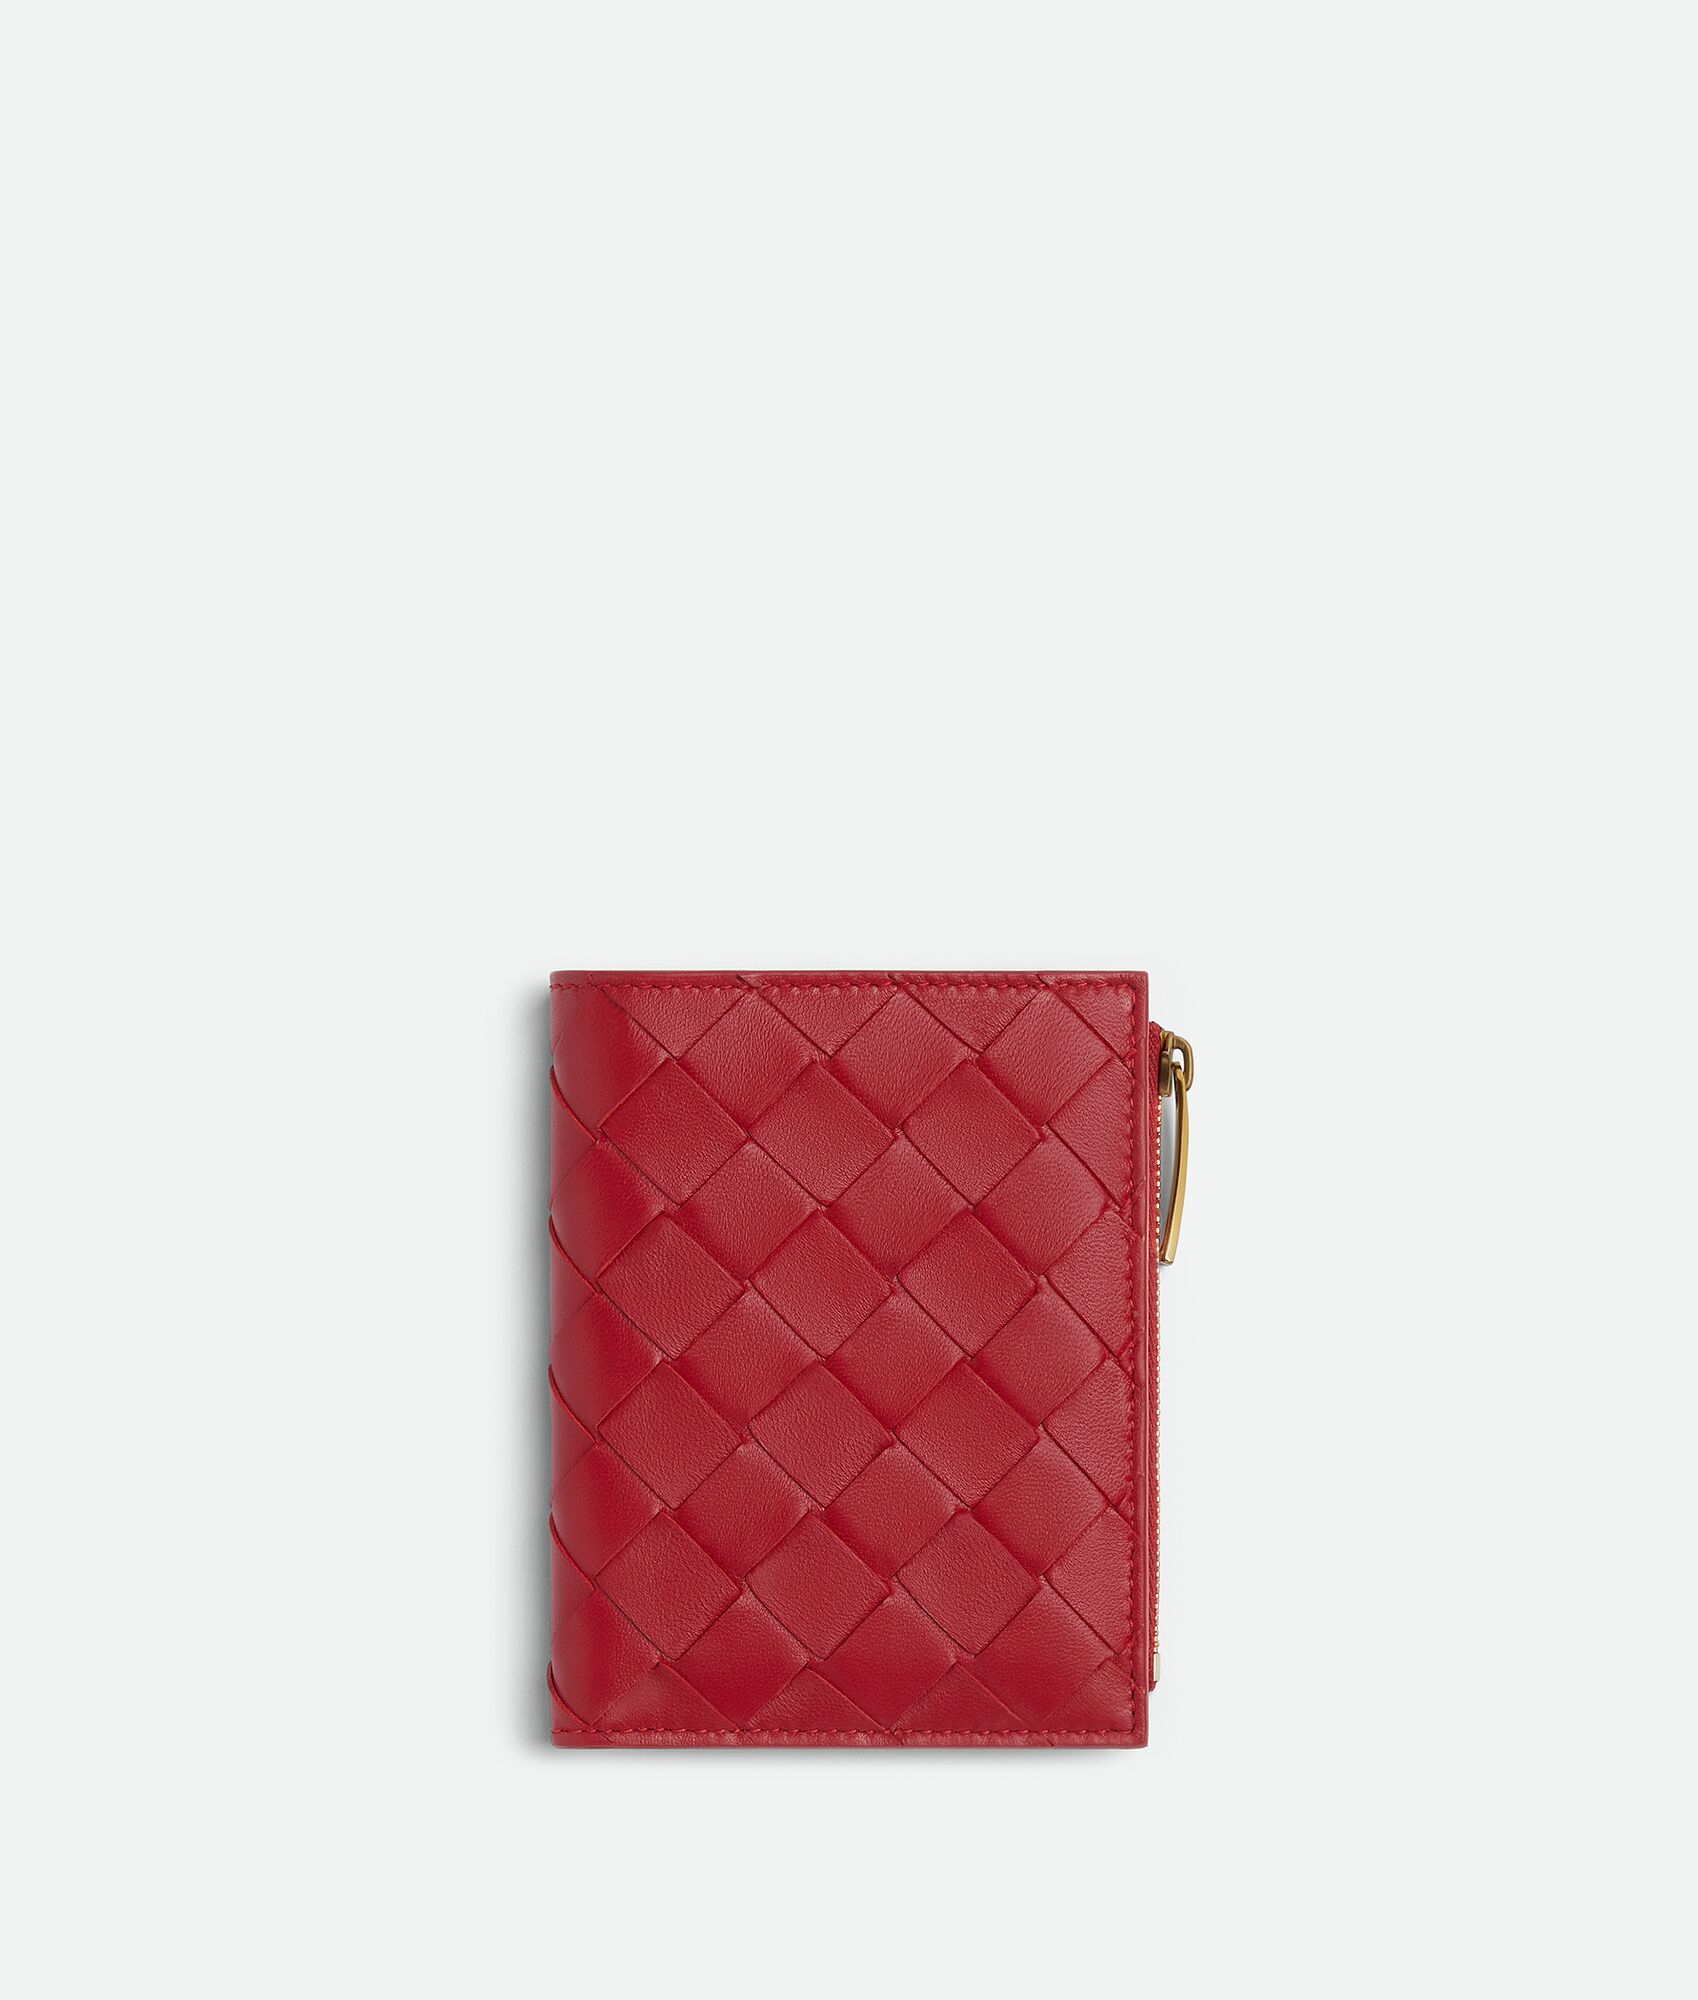 50代女性が品よく持てる人気のレディース二つ折り財布は、ボッテガ・ヴェネタのスモール イントレチャート 二つ折りファスナーウォレット